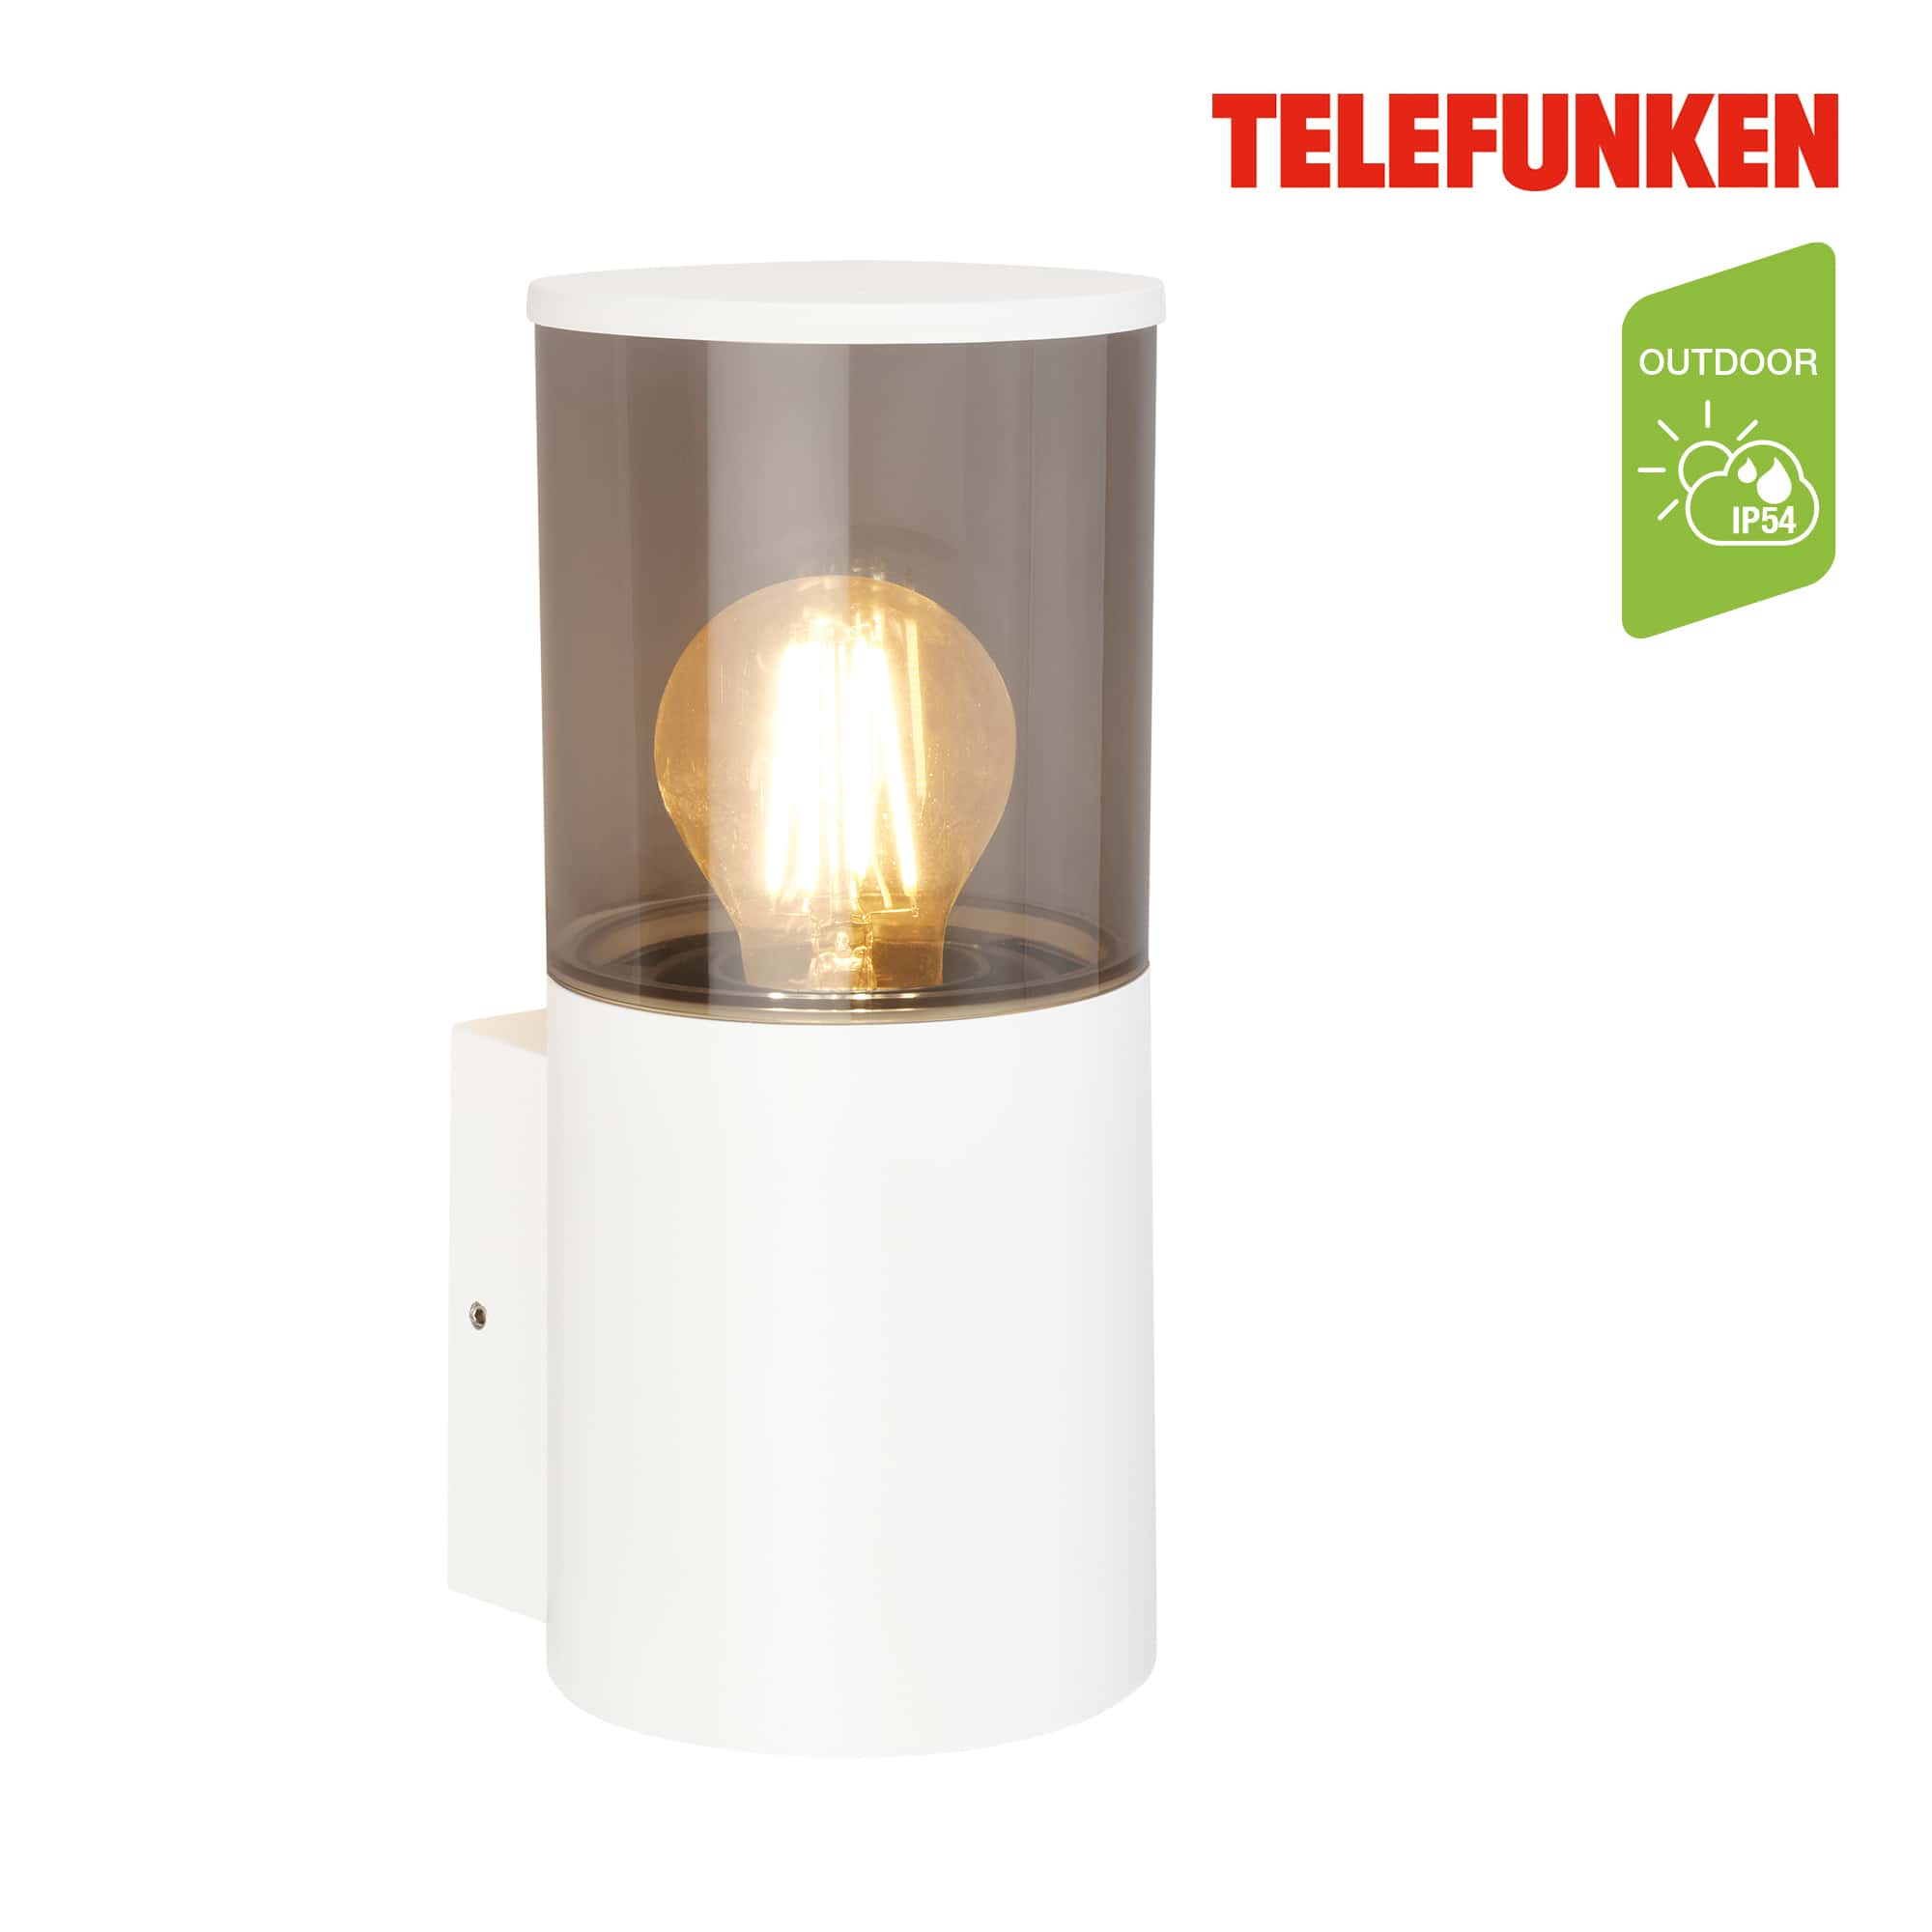 Telefunken LED wandlamp, spatwater- en stofbescherming, aan/uit